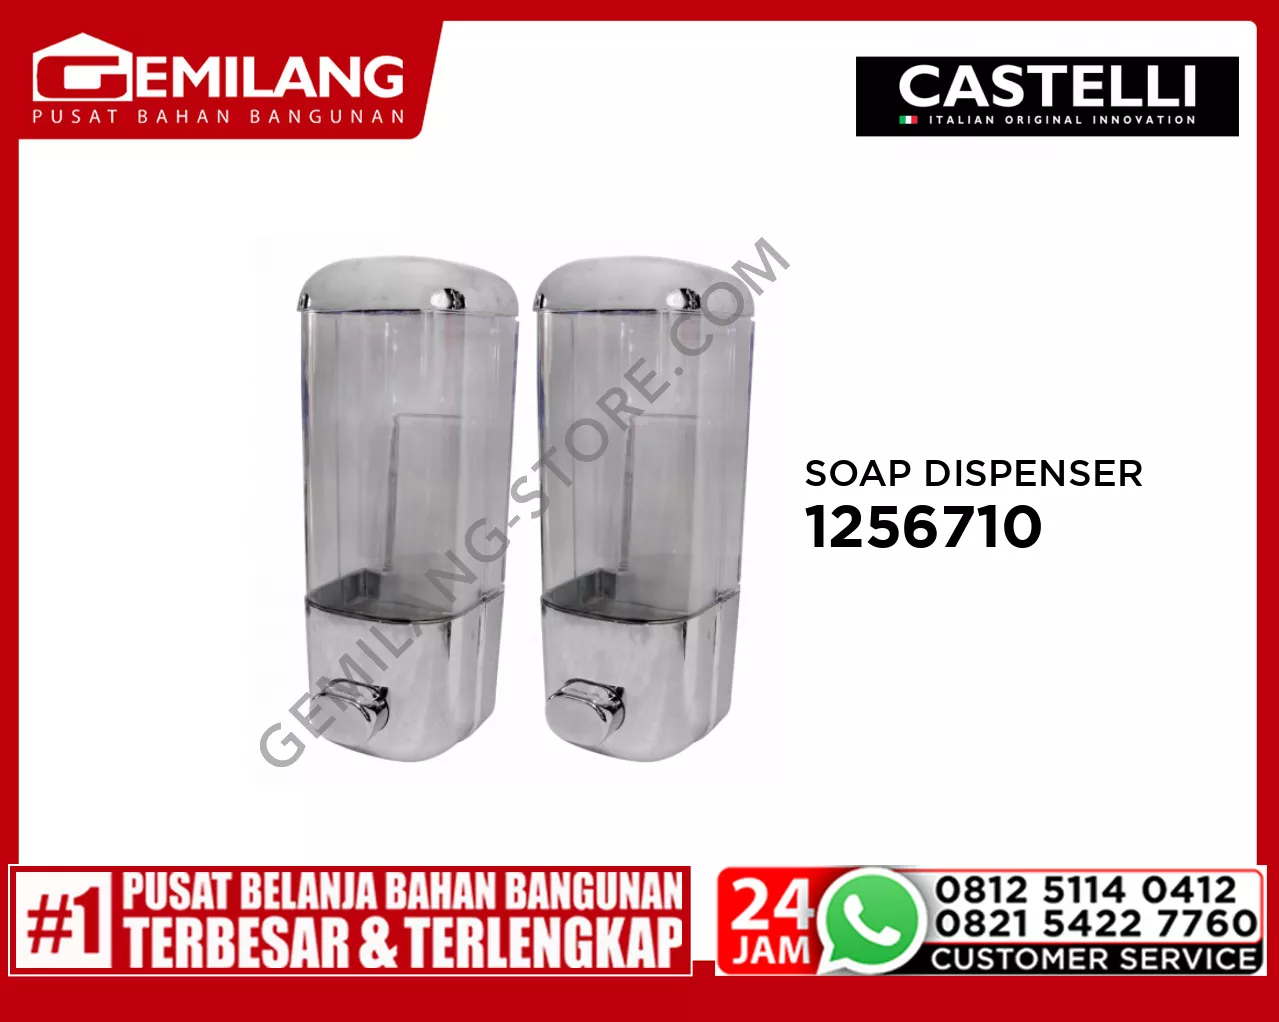 CASTELLI SOAP DISPENSER 1256710